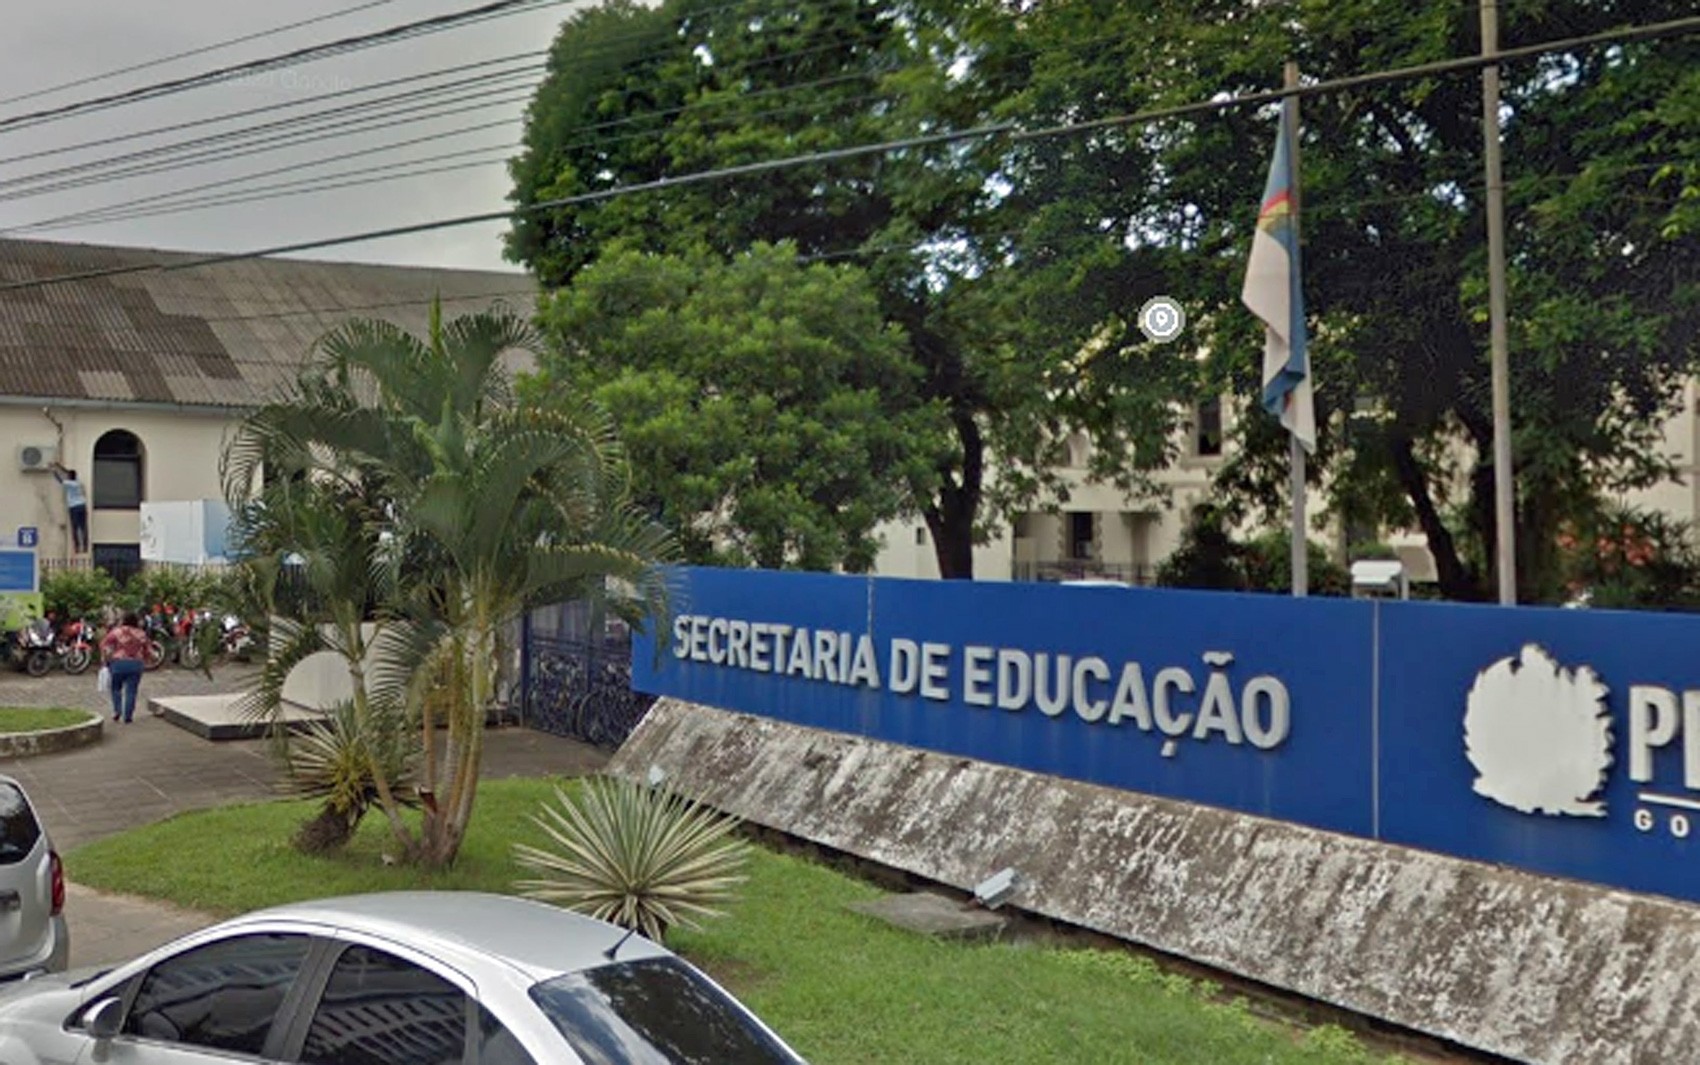 
Veja como vai ser feito pagamento dos precatórios do Fundef para professores da rede estadual de Pernambuco